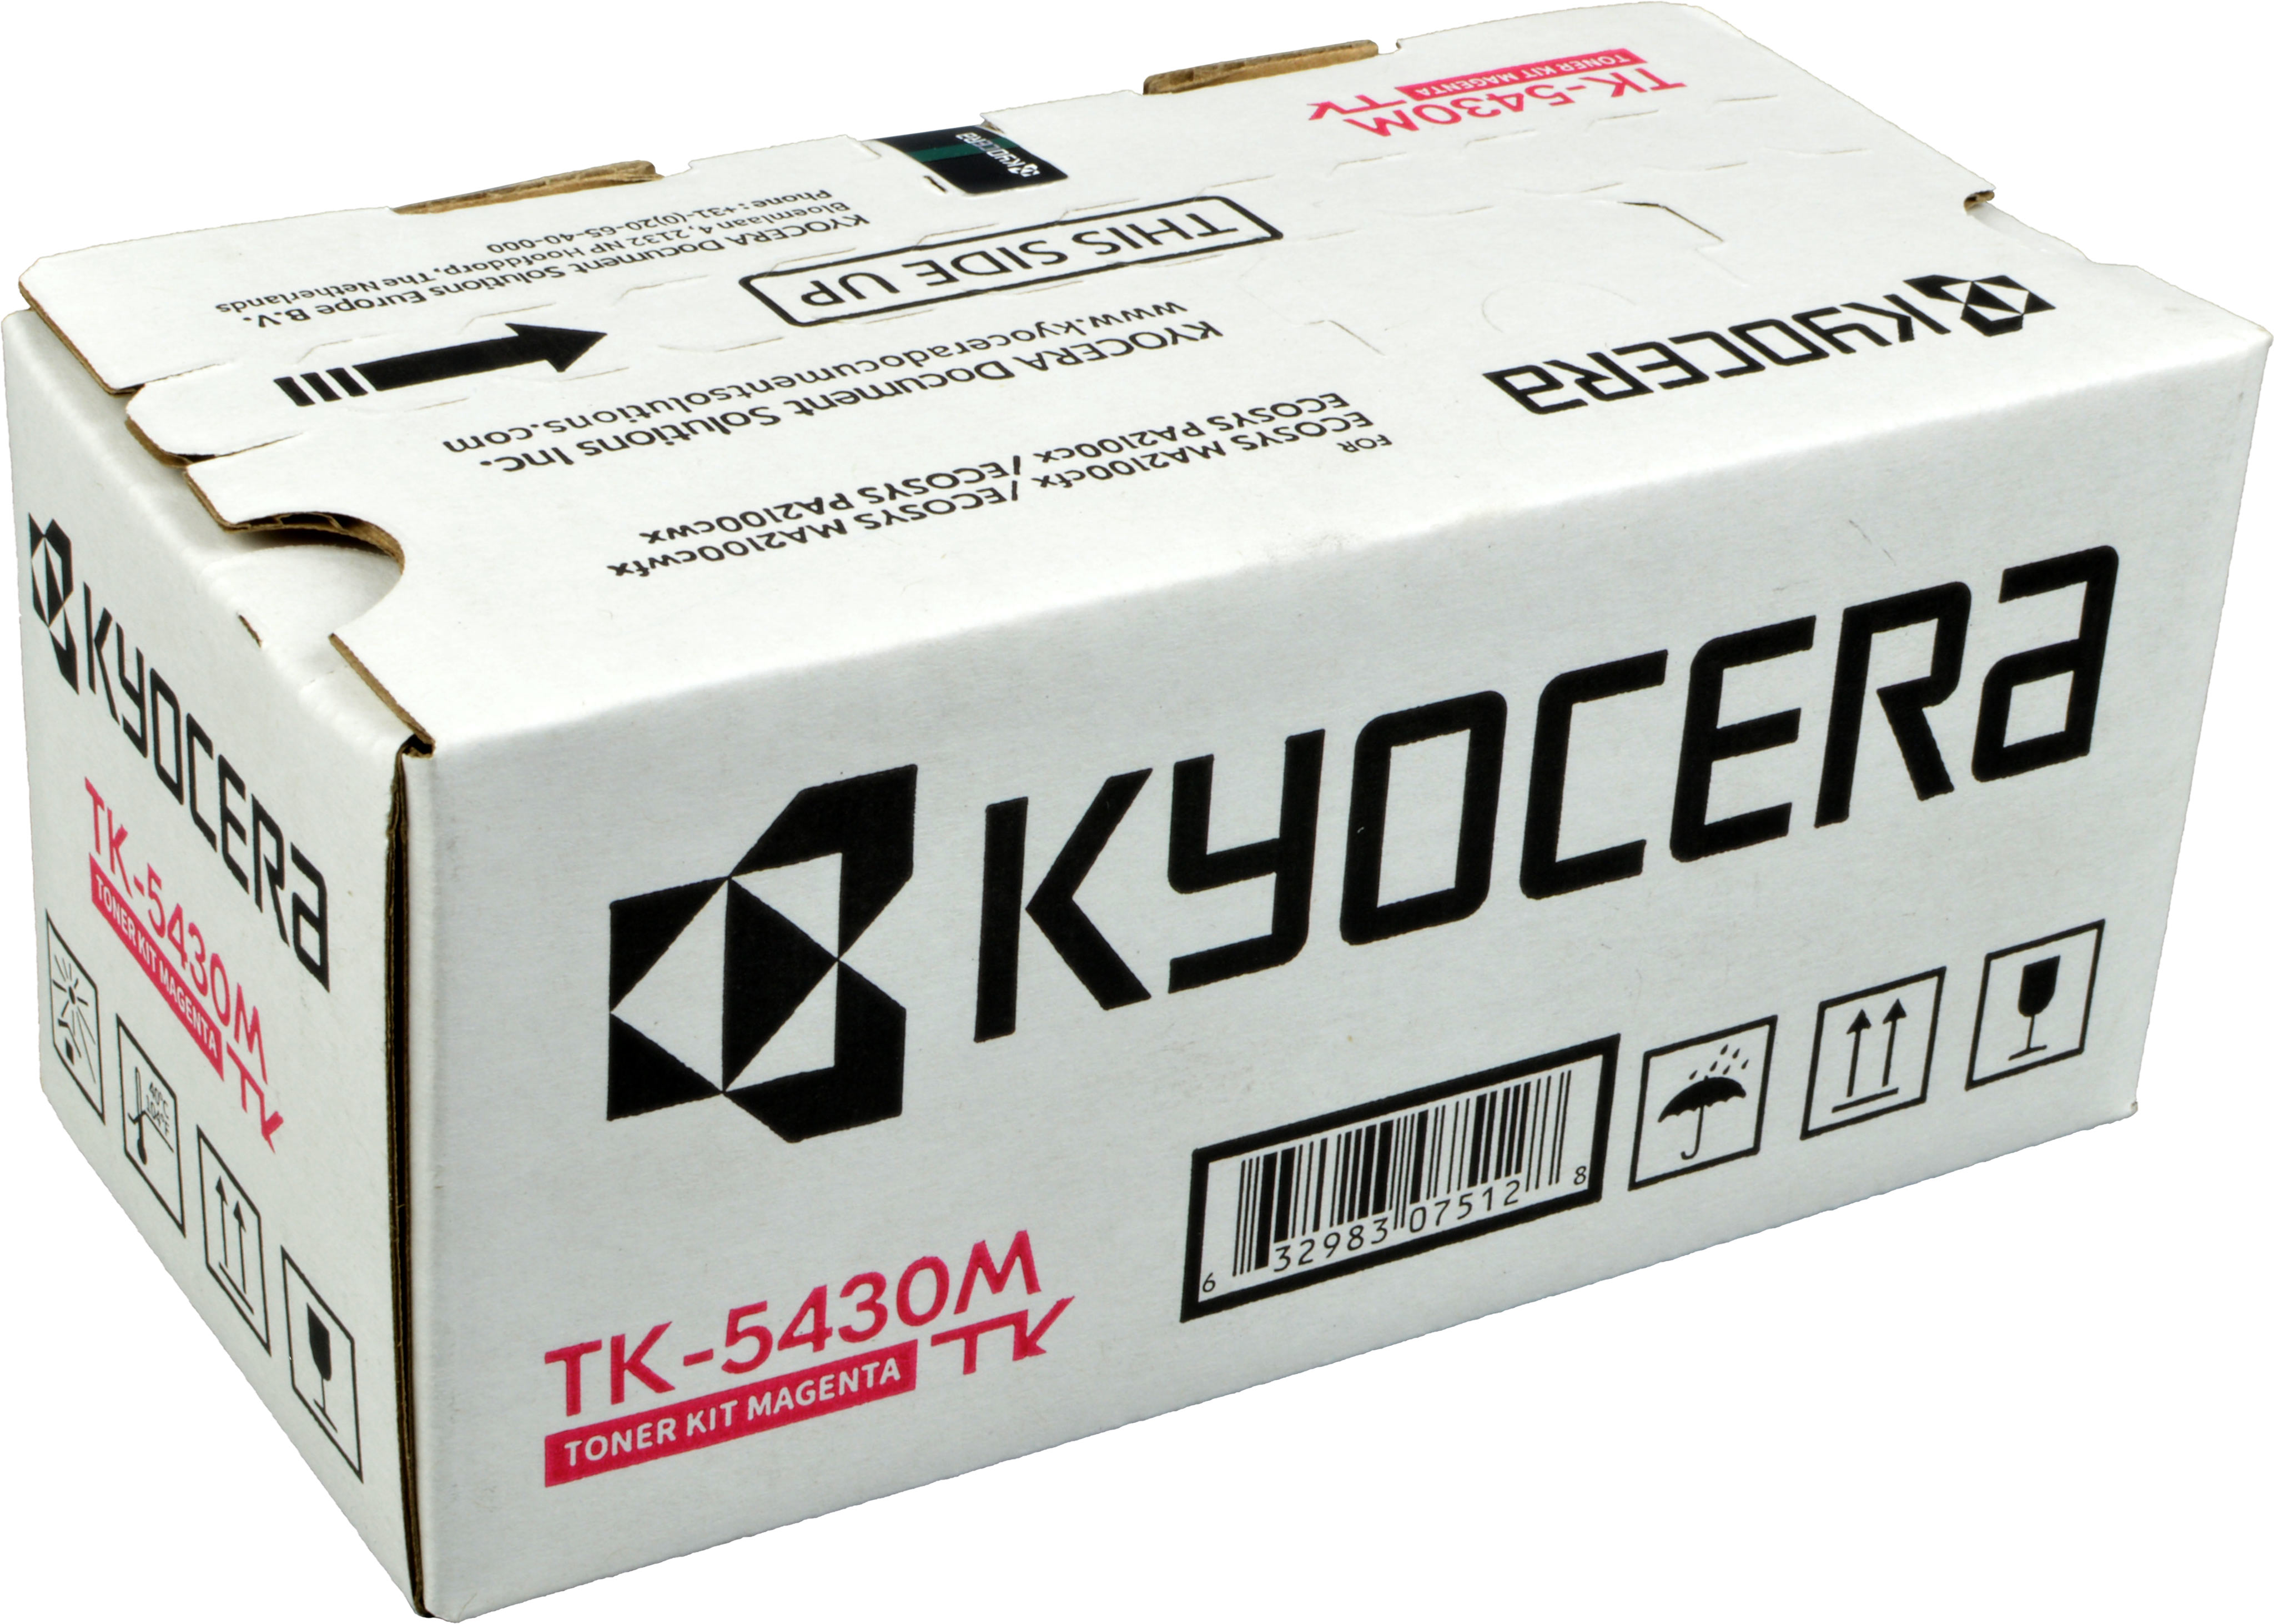 Kyocera Toner TK-5430M  1T0C0ABNL1  magenta